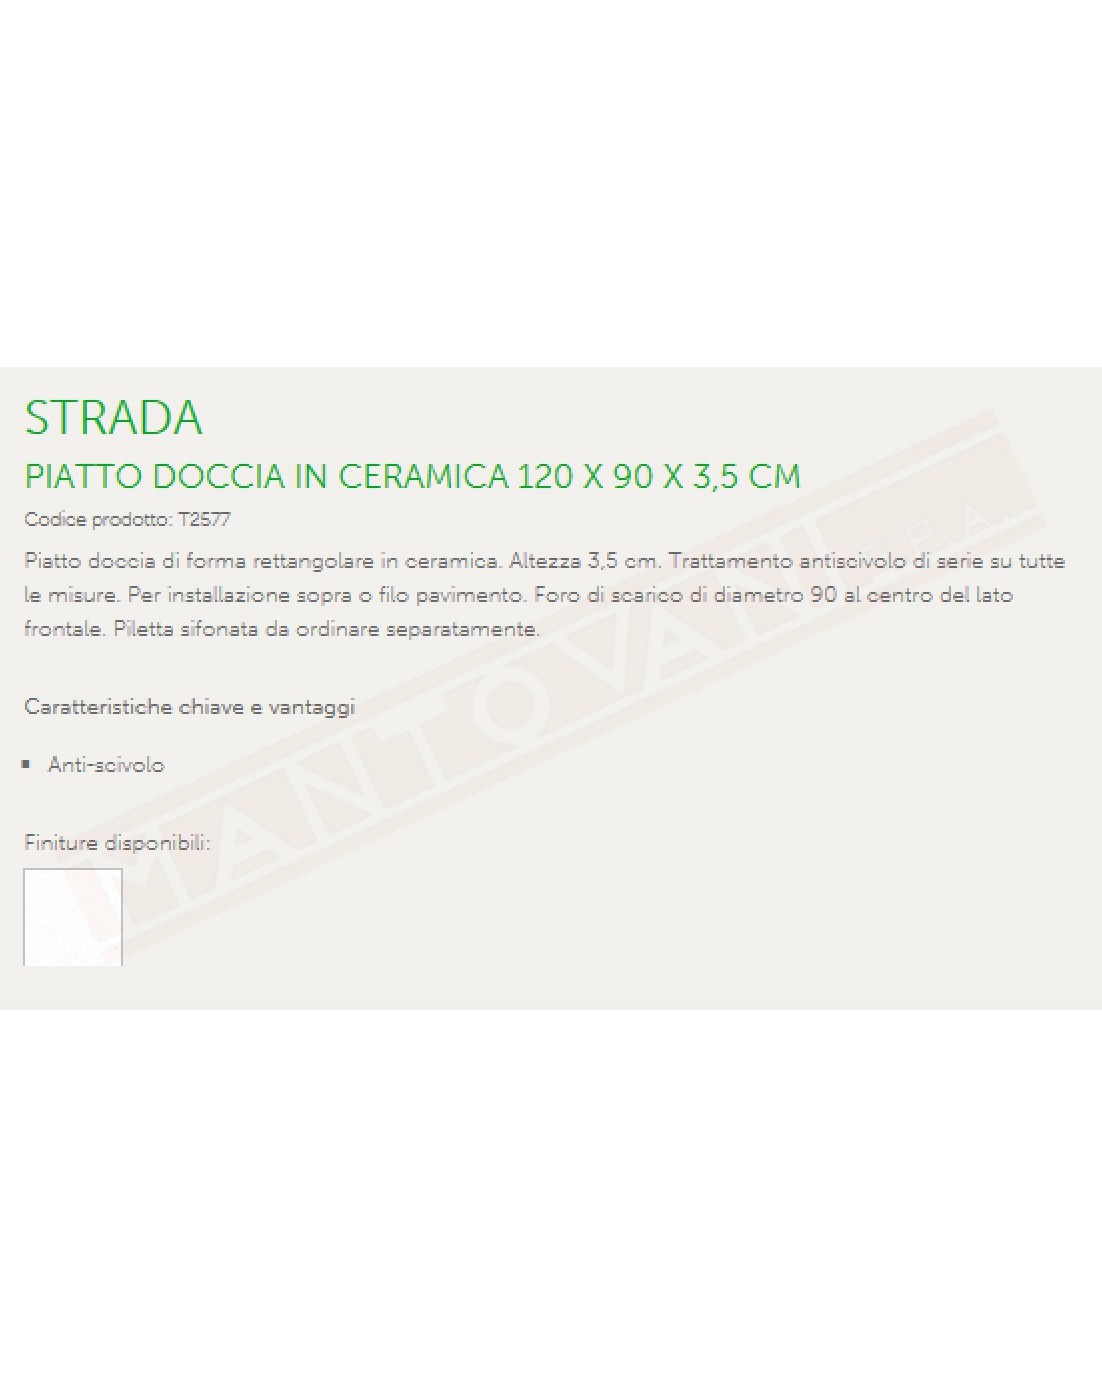 IDEAL STANDARD STRADA PIATTO DOCCIA 120x90 H 3.5 CM CON TRATTAMENTO ANTISCIVOLO FORO DIAMETRO 90 MM AL CENTRO DEL LATO FRONTALE